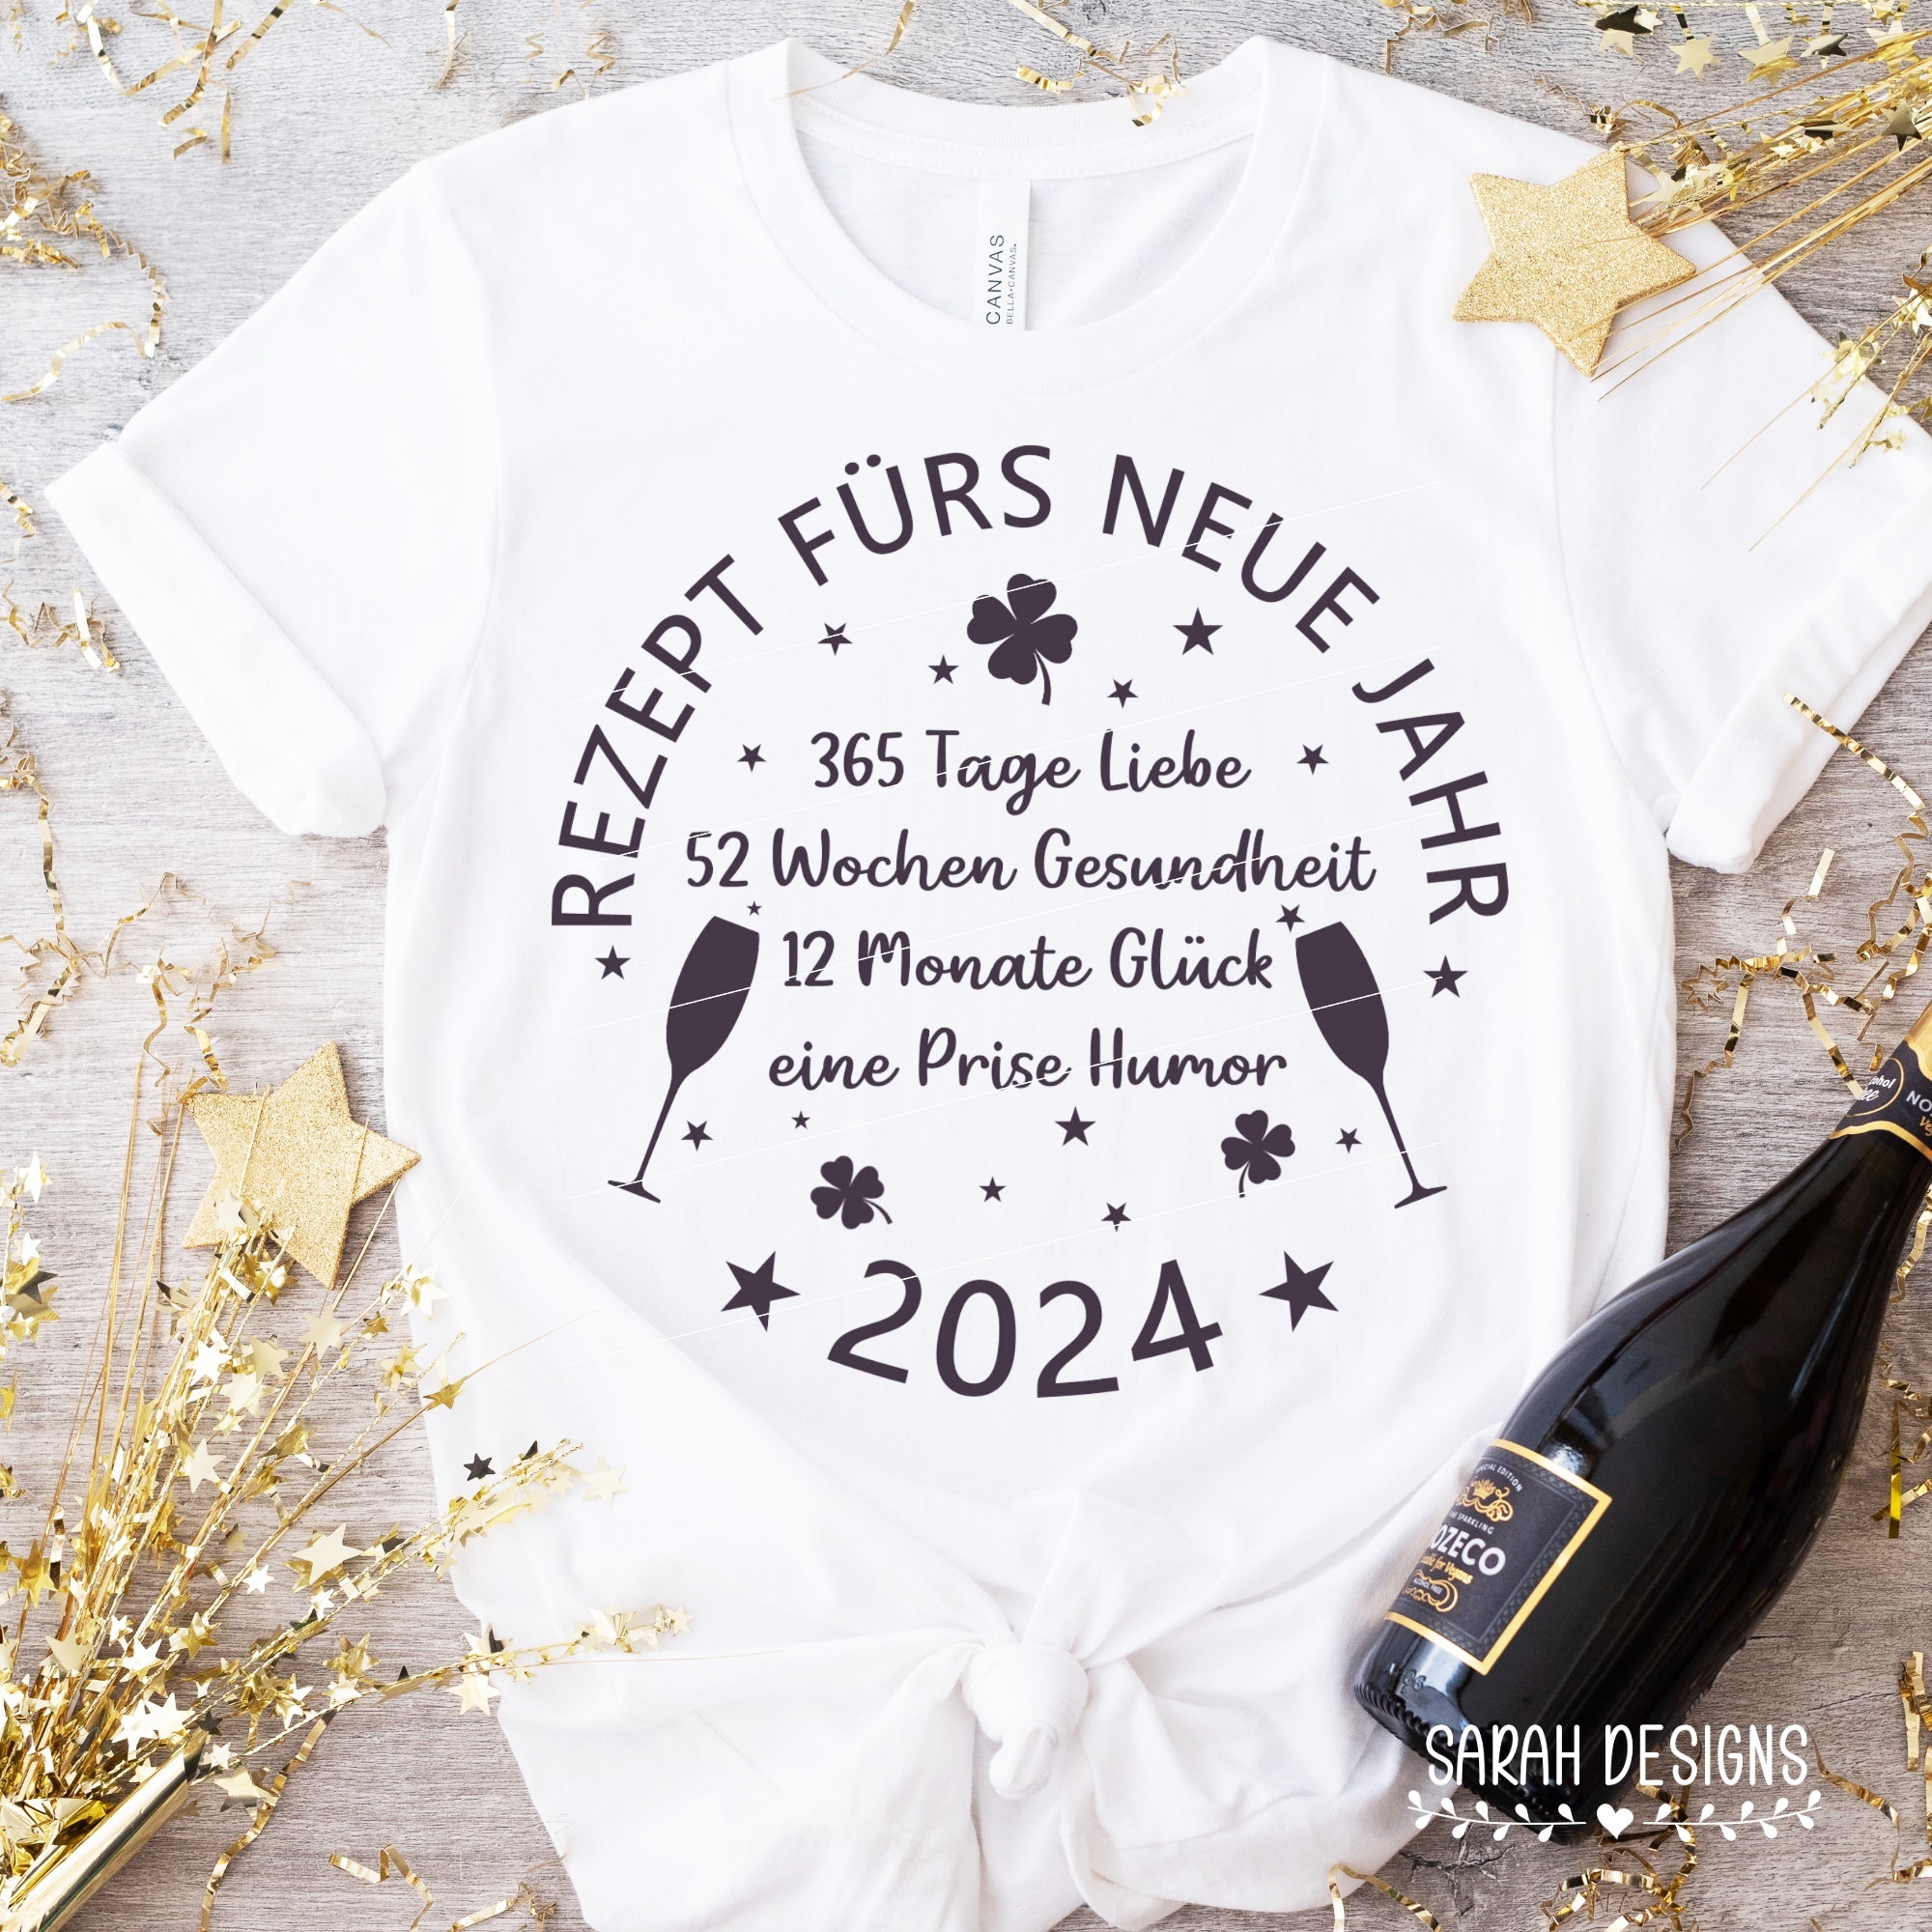 Plotterdatei Plottervorlage Rezept fur das neue Jahr 2024 Silvester Happy new Year Party Spruch Karten Neujahrsgruß